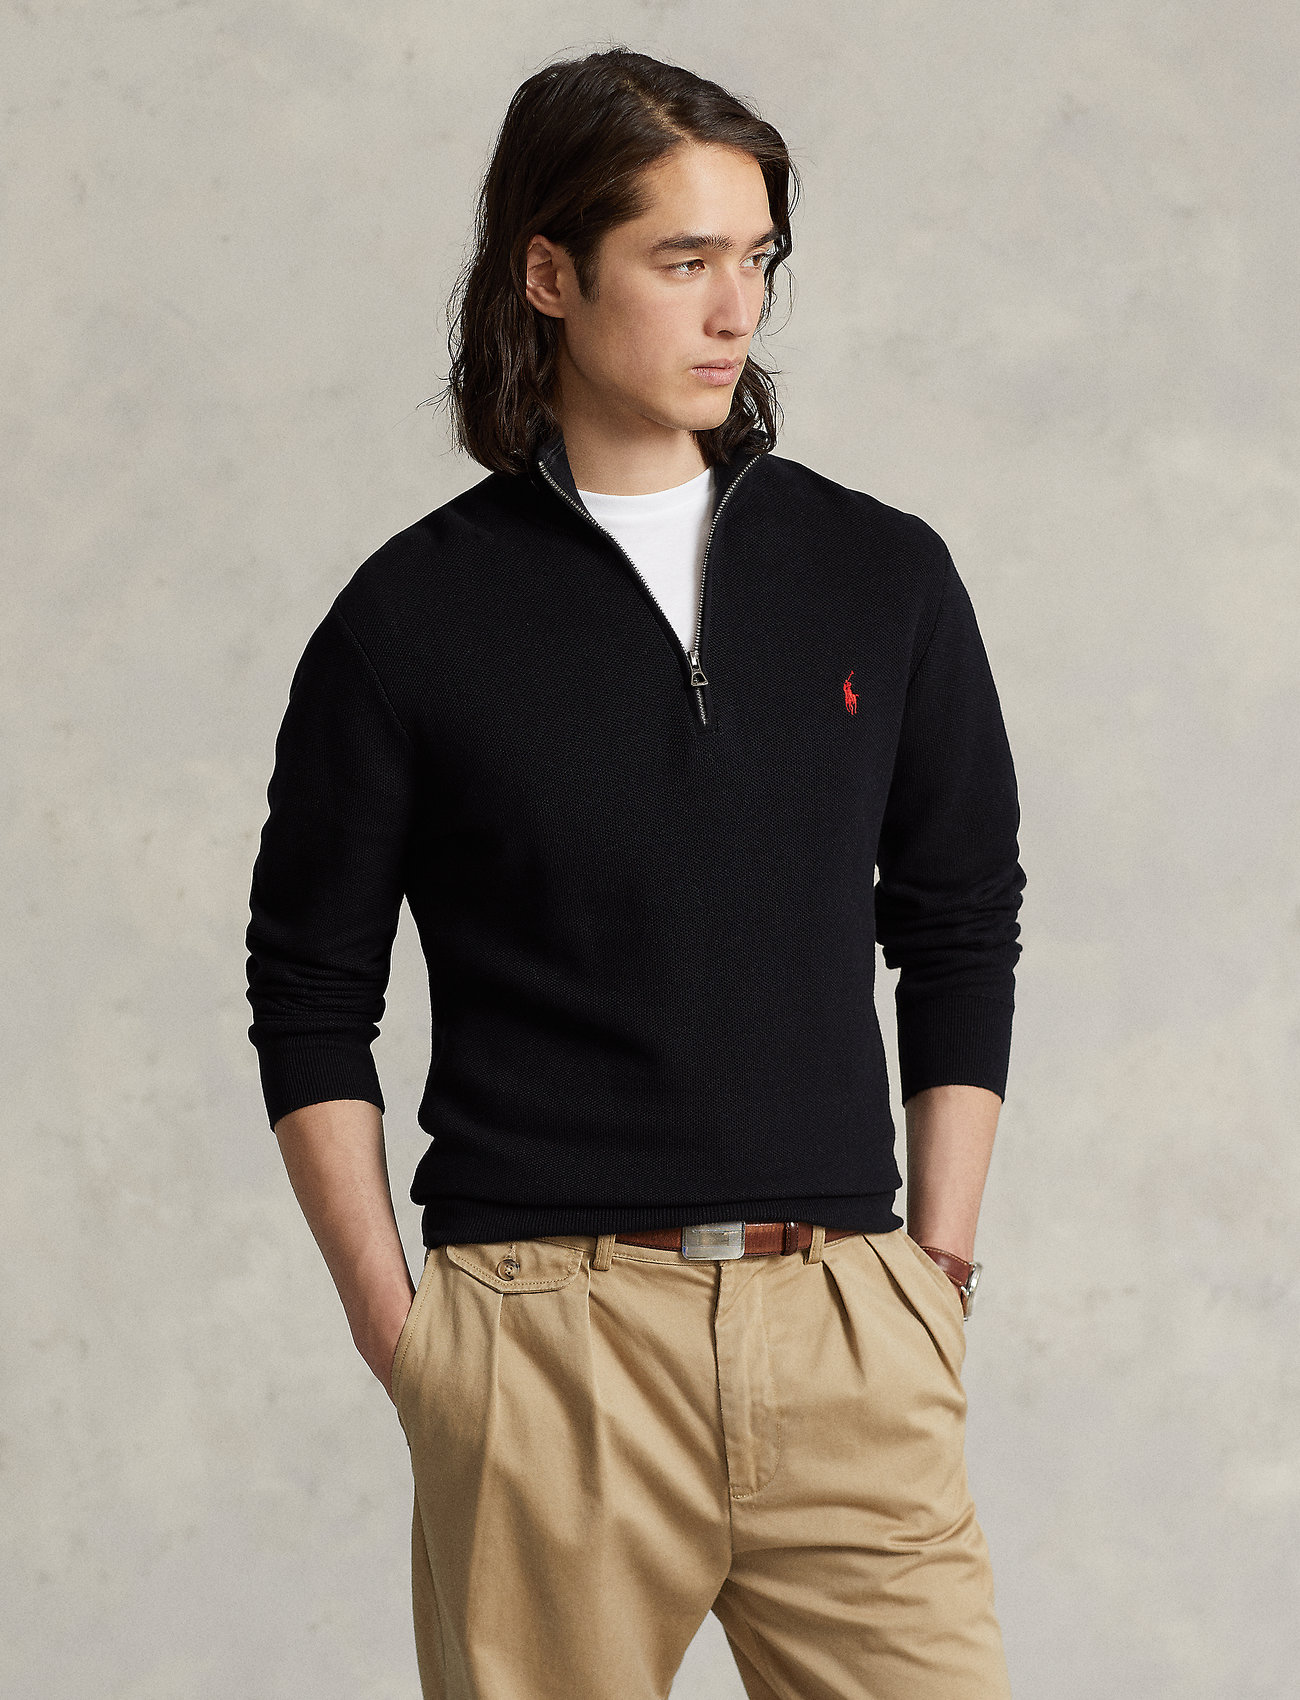 nuance Mobilisere sigte Polo Ralph Lauren Mesh-knit Cotton Quarter-zip Sweater - Half zip-trøjer -  Boozt.com